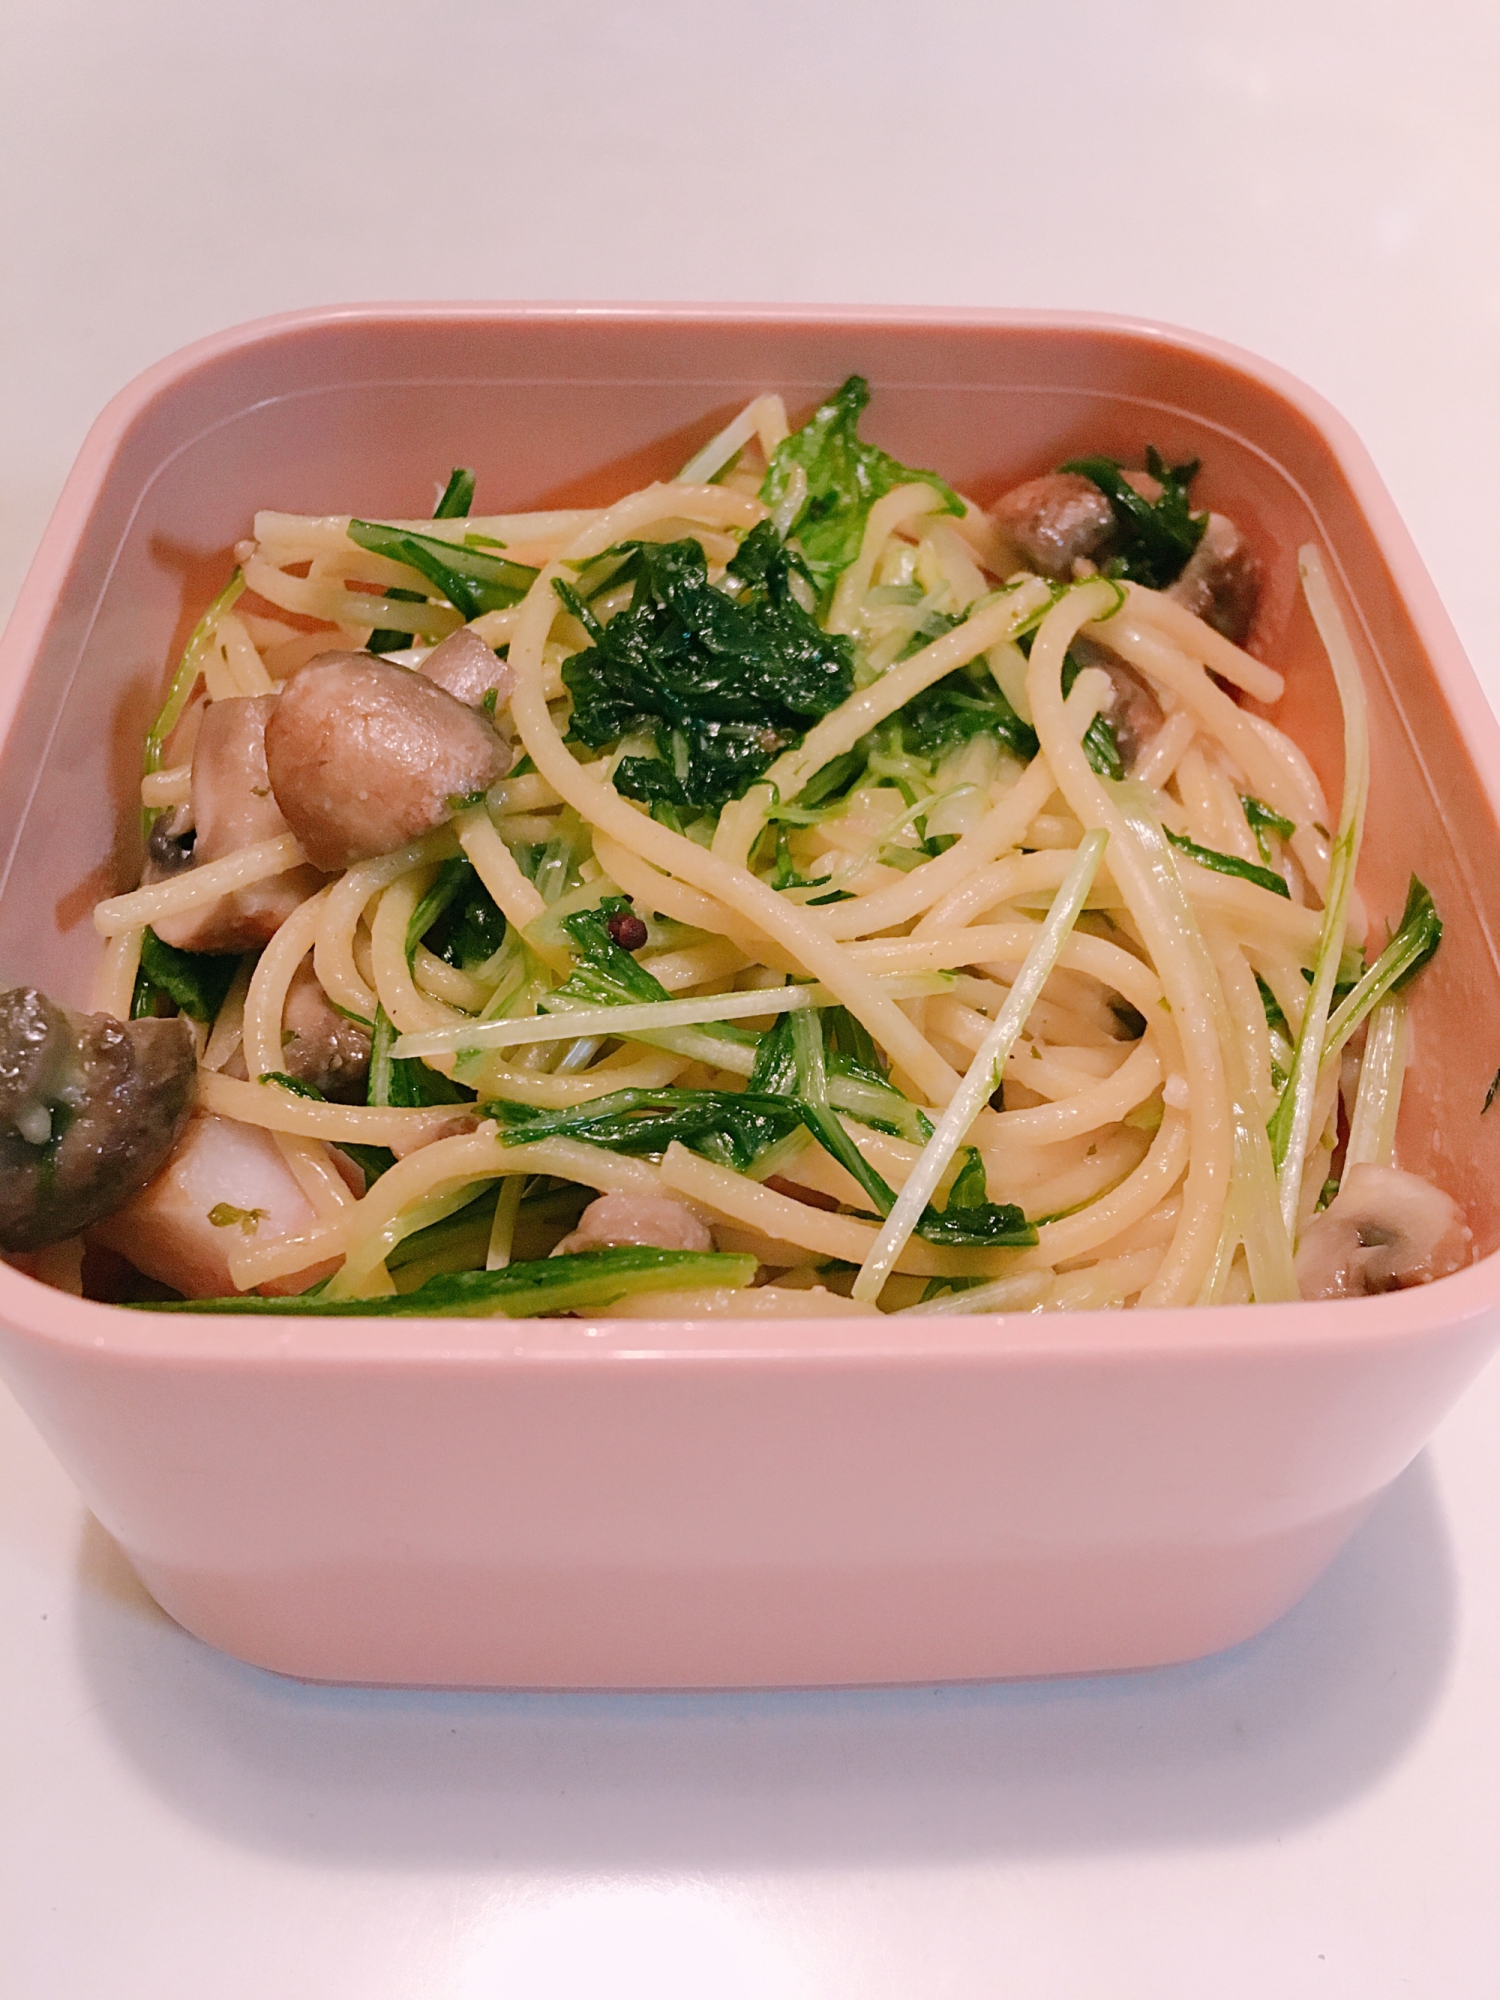 【お弁当レシピ】水菜とベーコンとペペロンチーノ